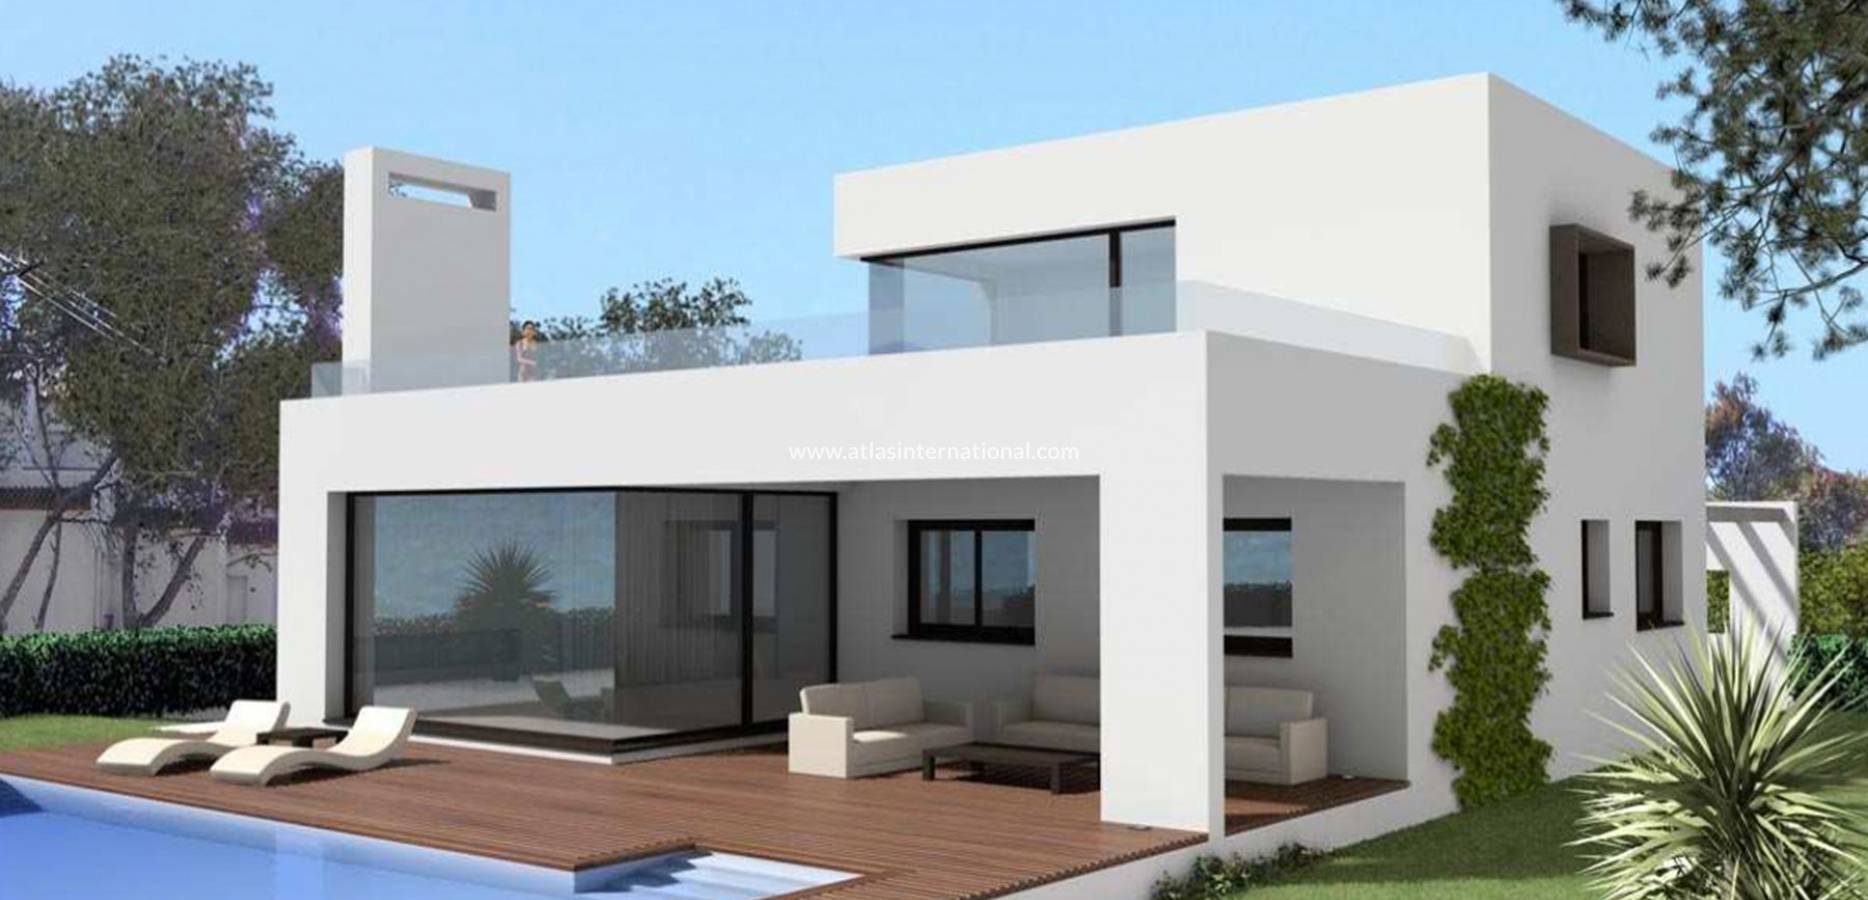 New Build - Frittliggende villa - Sagra